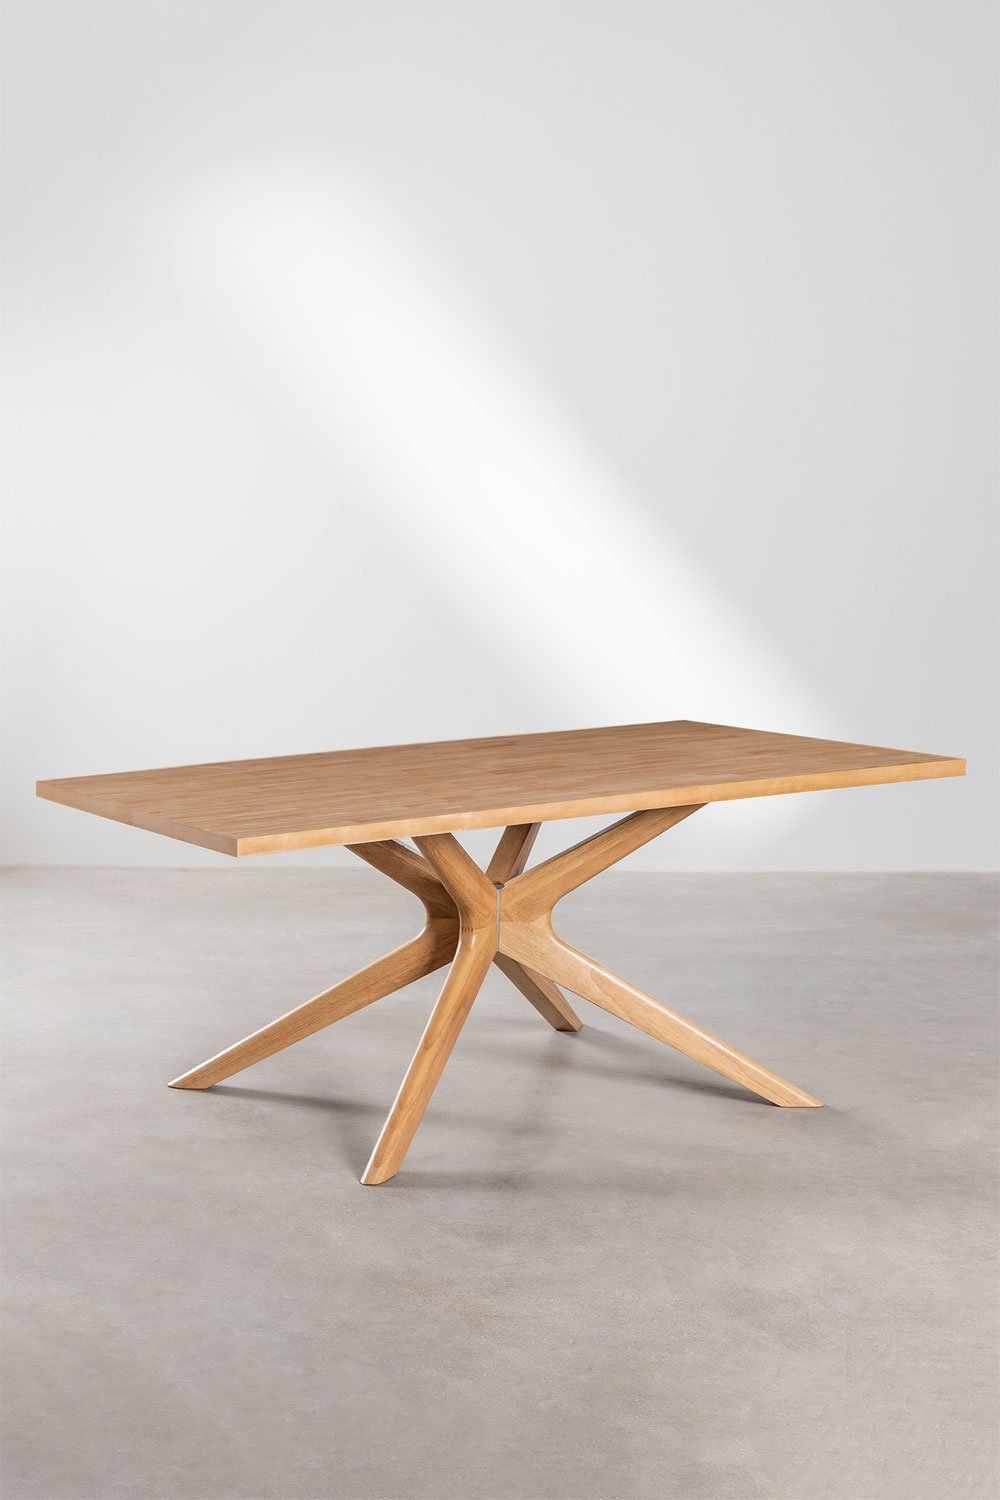 Set tavolo da pranzo rettangolare (180x90 cm) Arnaiz e 6 sedie con  braccioli in legno Fresno e rattan Lali Style - SKLUM